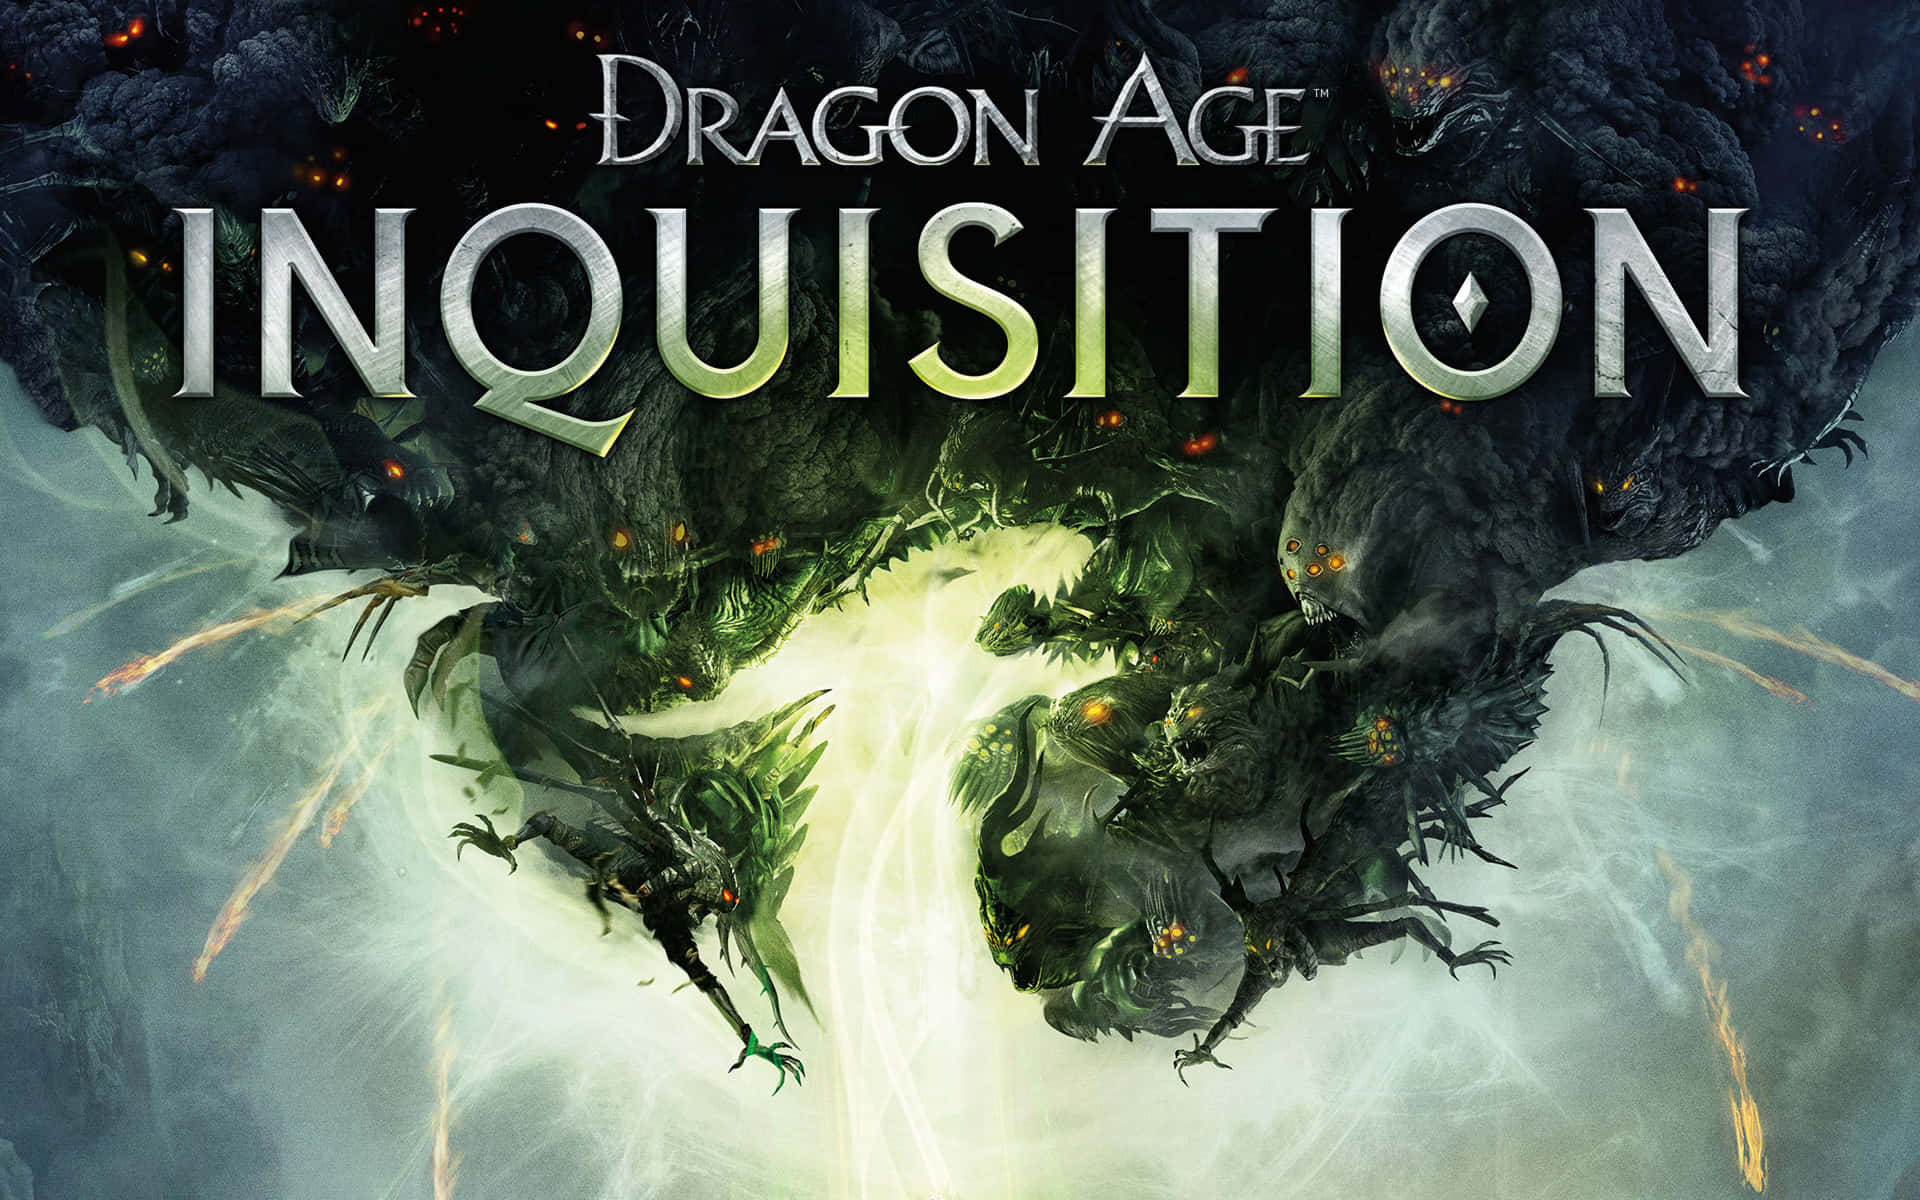 Viveincreíbles Aventuras De Fantasía Épica En Dragon Age Inquisition